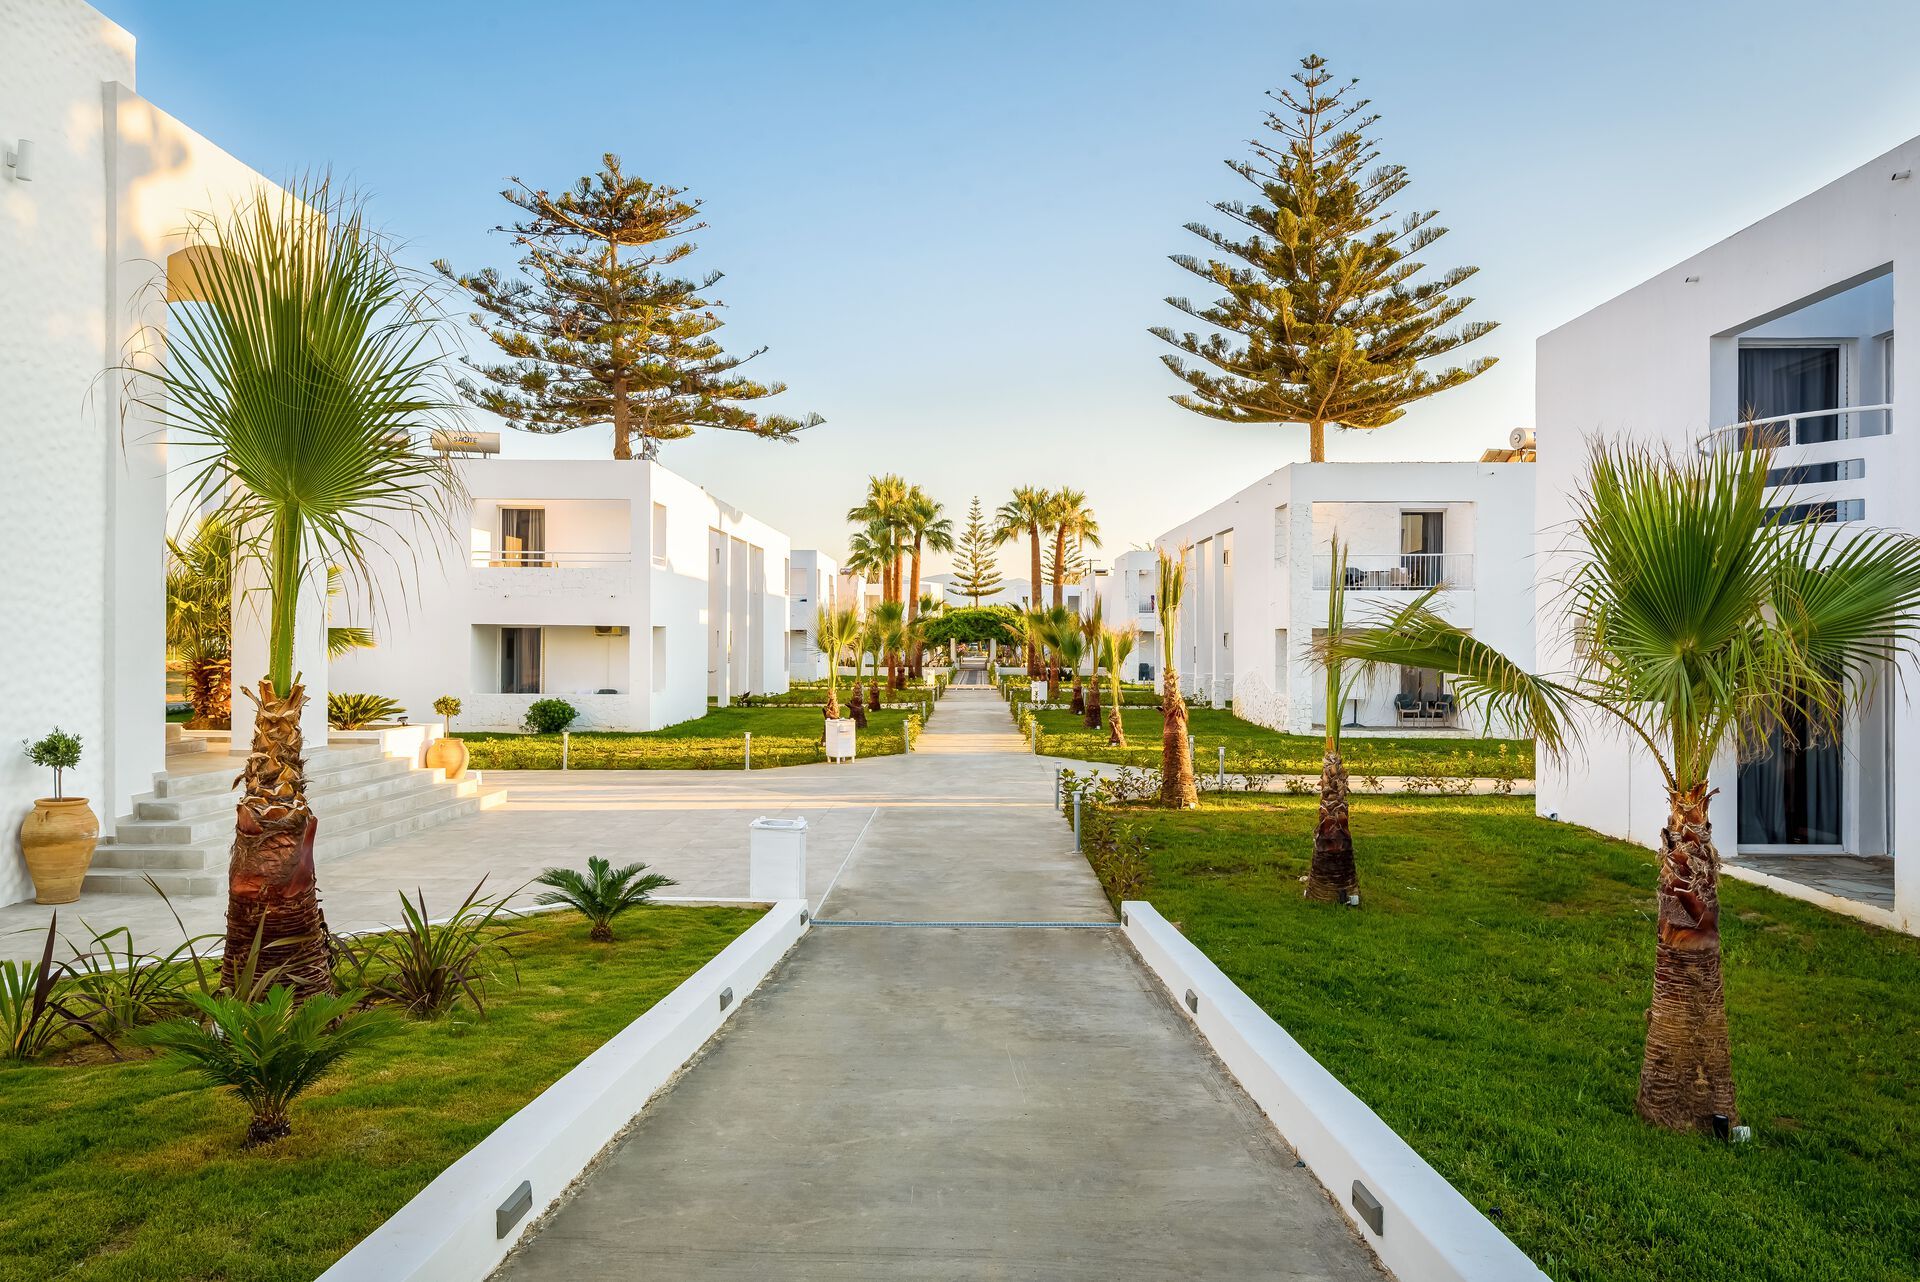 Crète - La Canée - Grèce - Iles grecques - Hotel Solimar White Pearl 4*